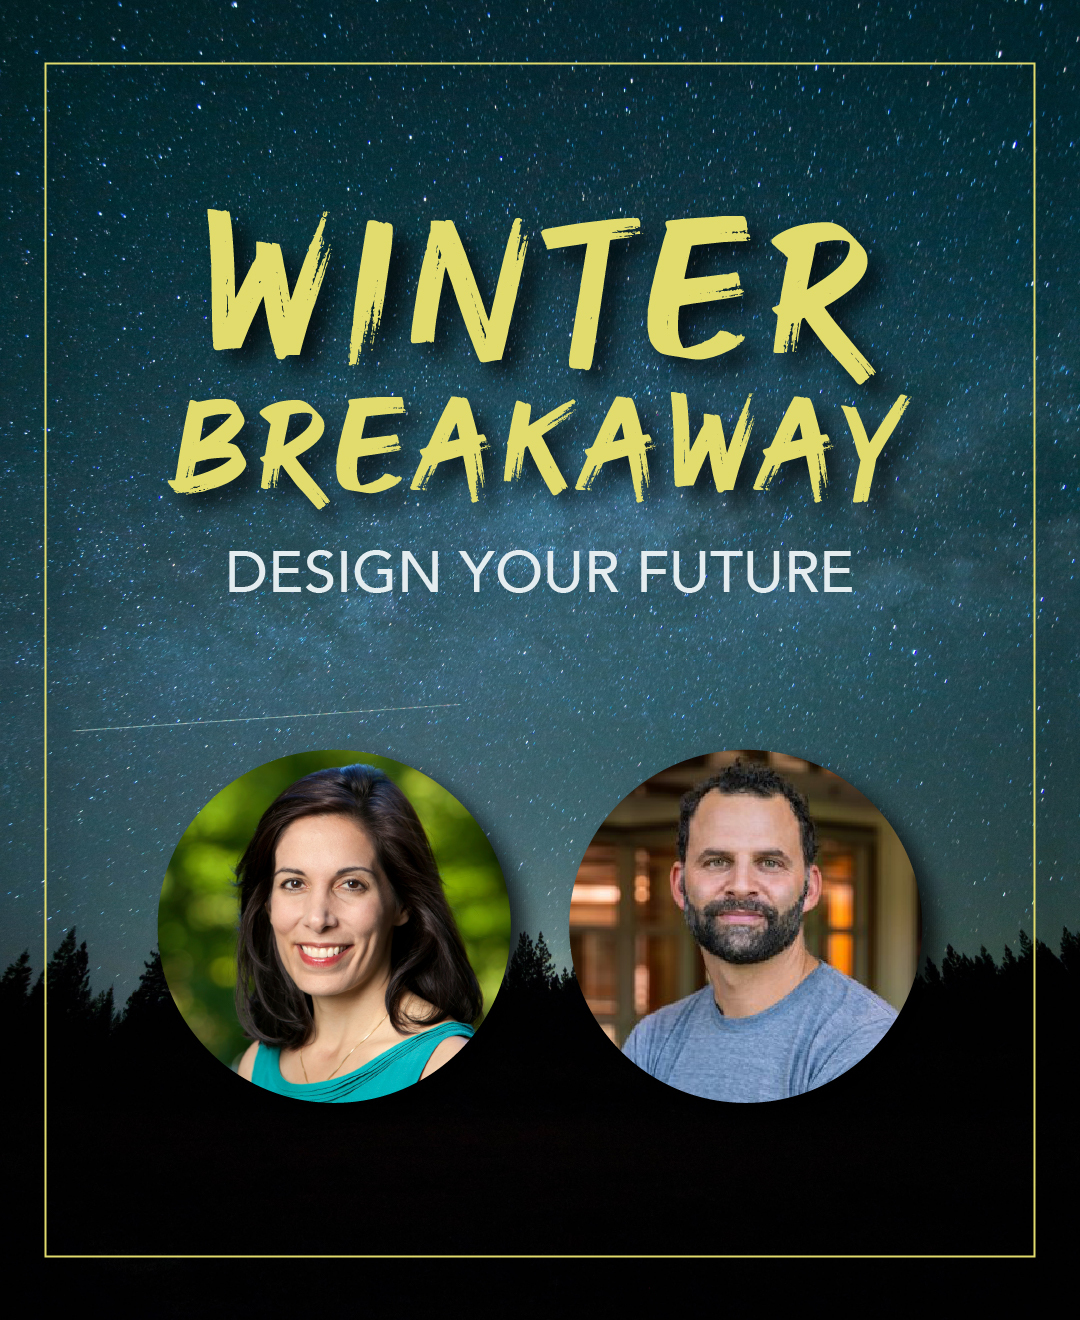 Winter Breakaway: Design Your Future